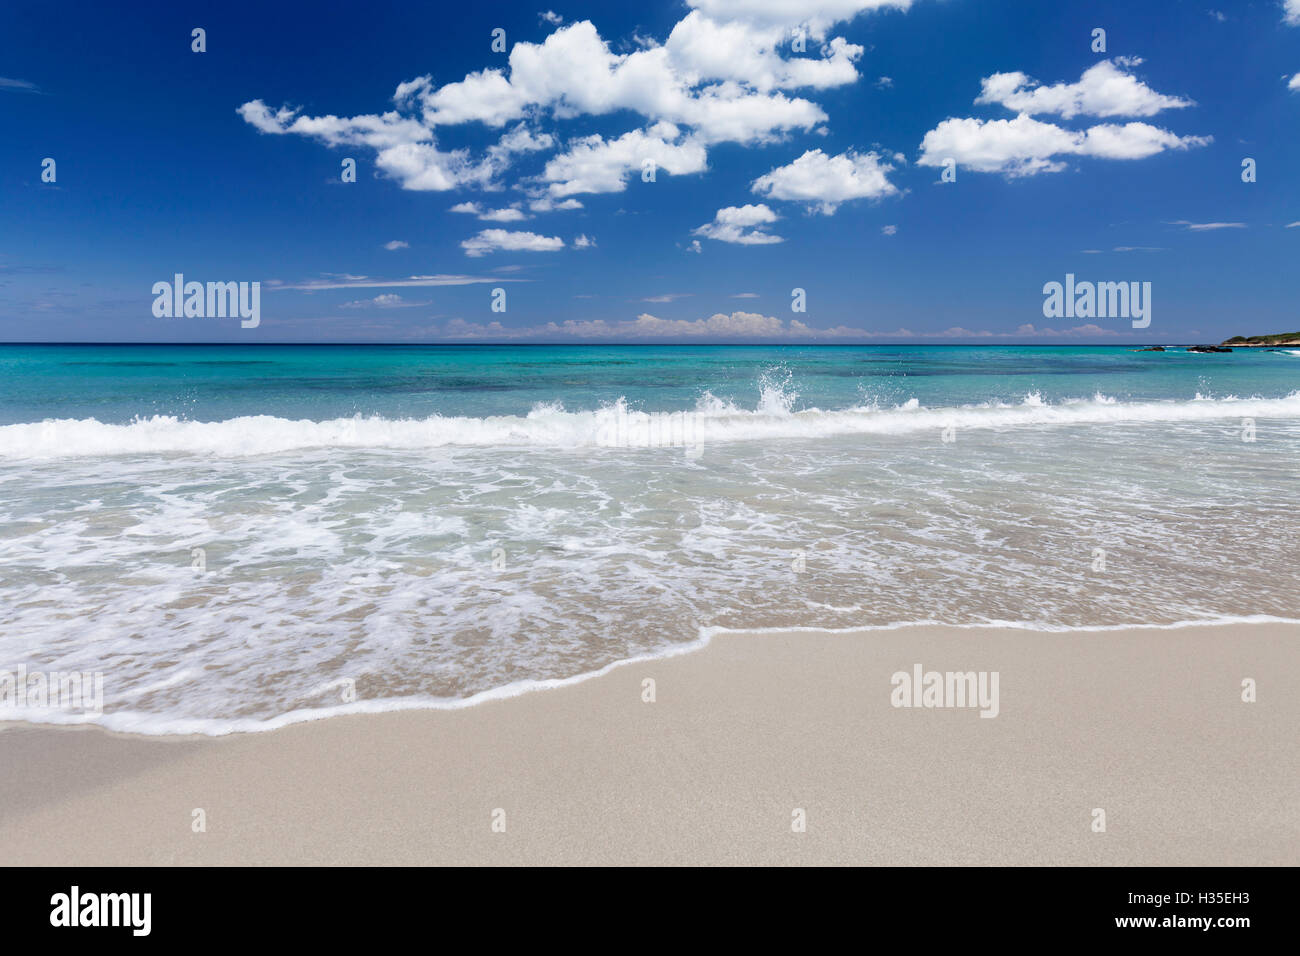 Baia dei Turchi beach, near Otranto, Lecce province, Salentine ...